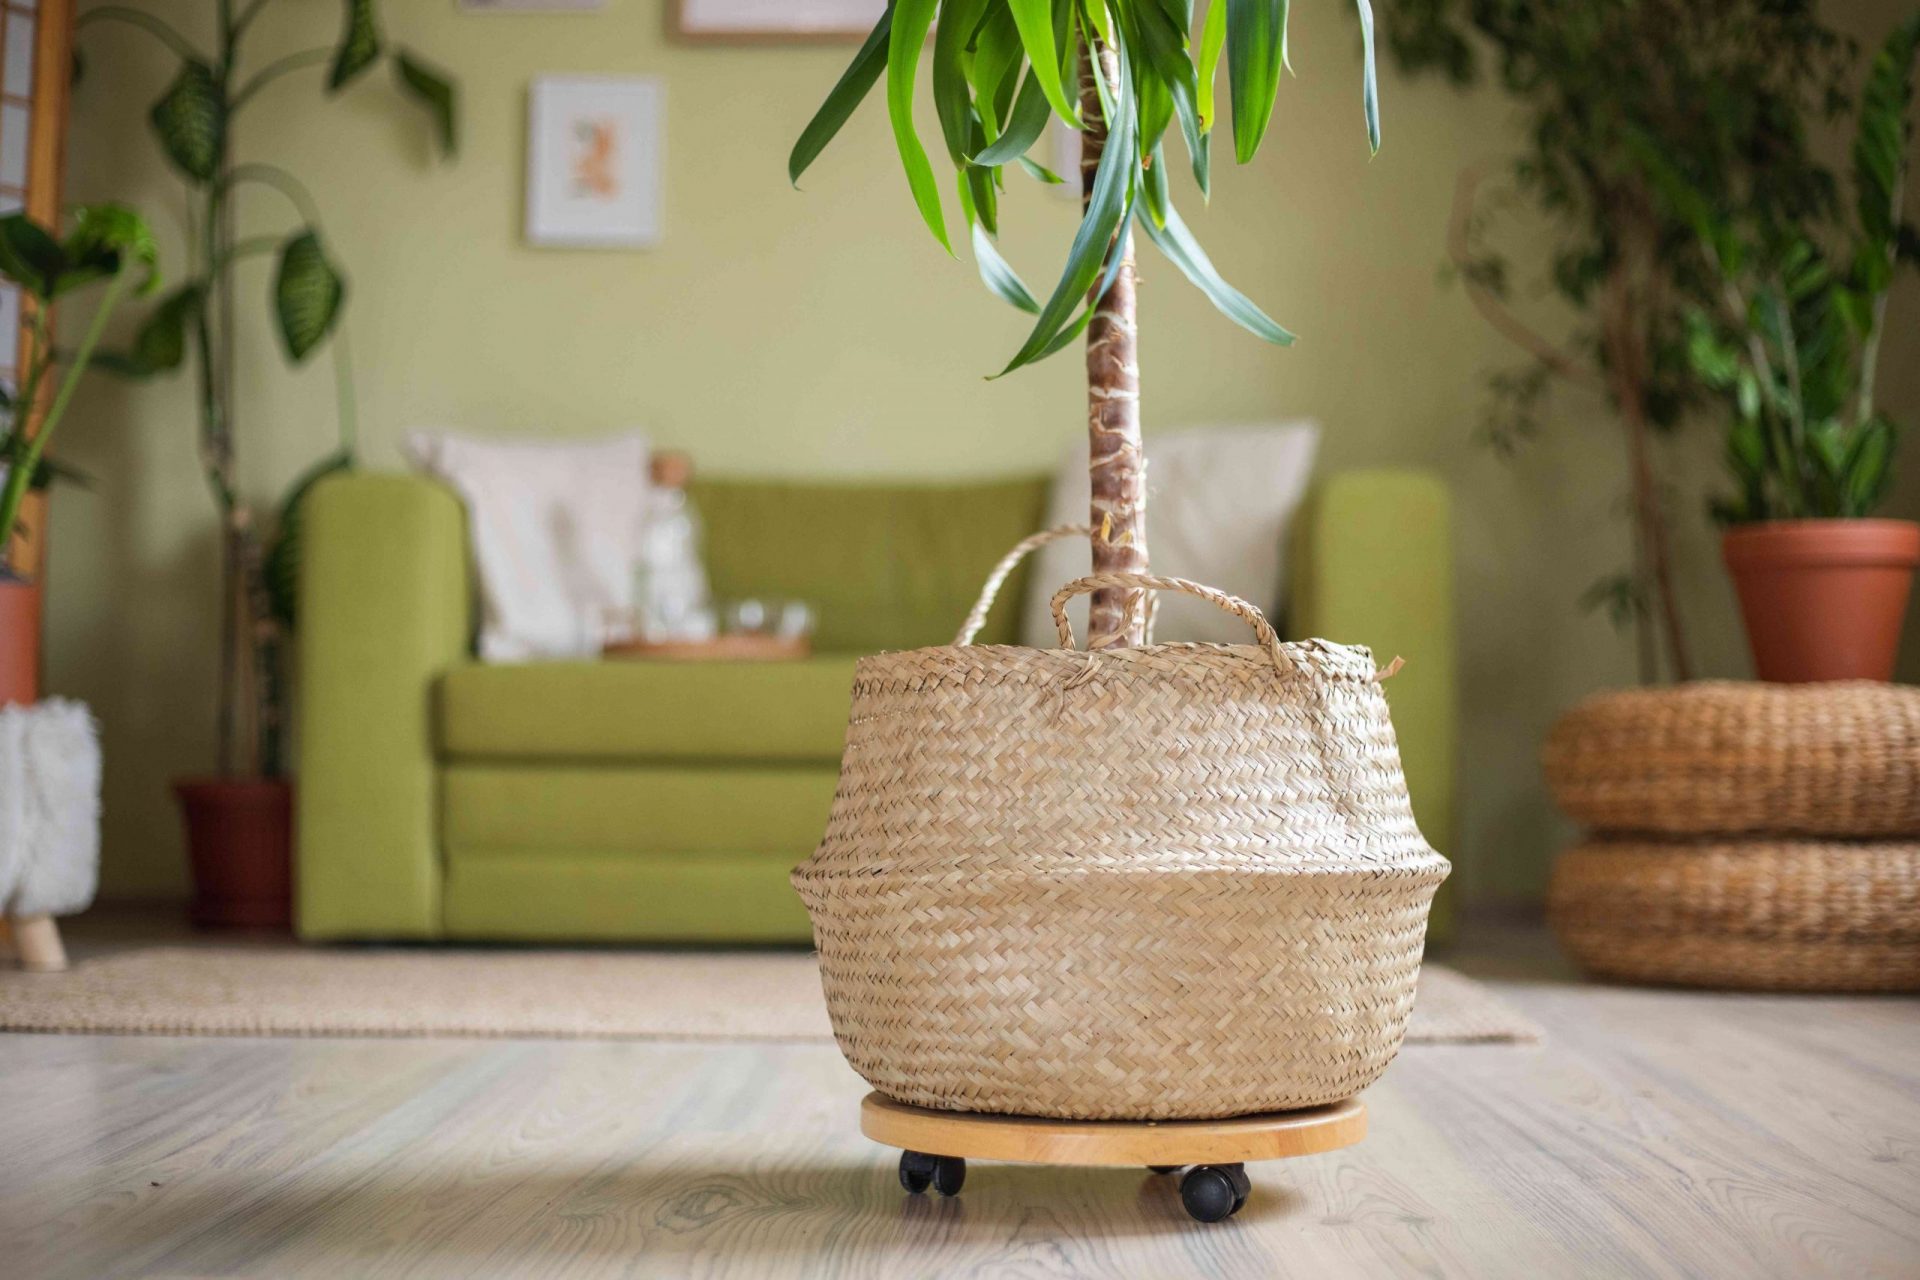 una gran planta de interior en una cesta de mimbre sobre una bandeja de madera con ruedas para desplazarse